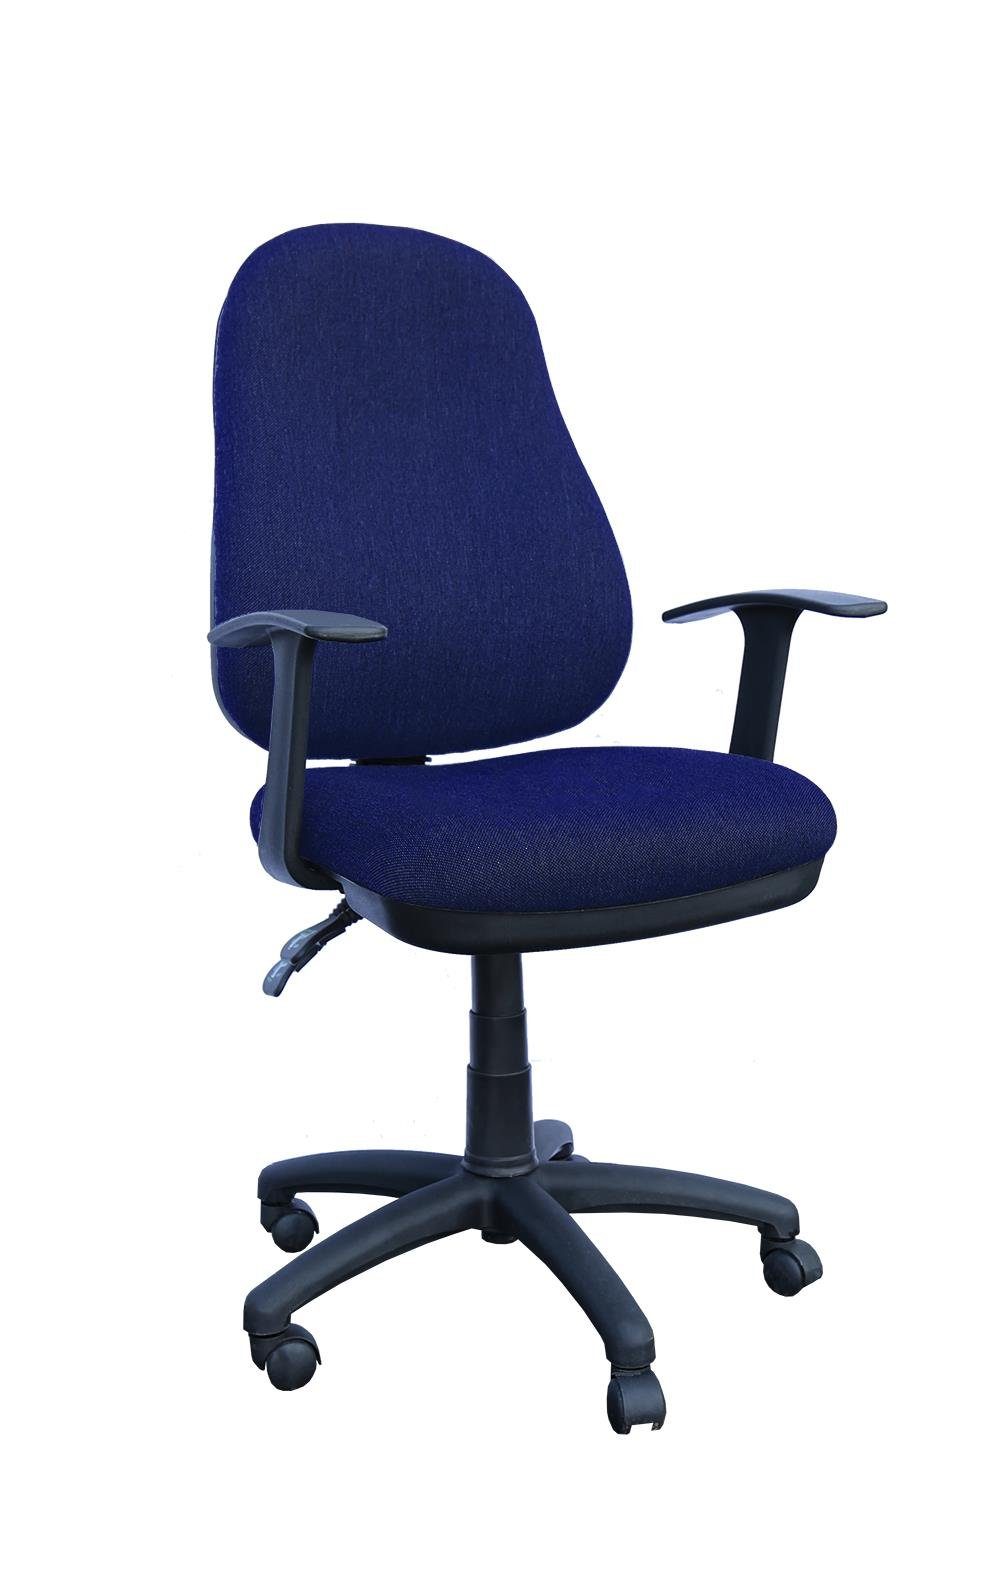 Bandscheibensitz blau mit ergonomisch Armlehnen) (Bürodrehstuhl geformt Steelboxx Bürodrehstuhl Drehstuhl